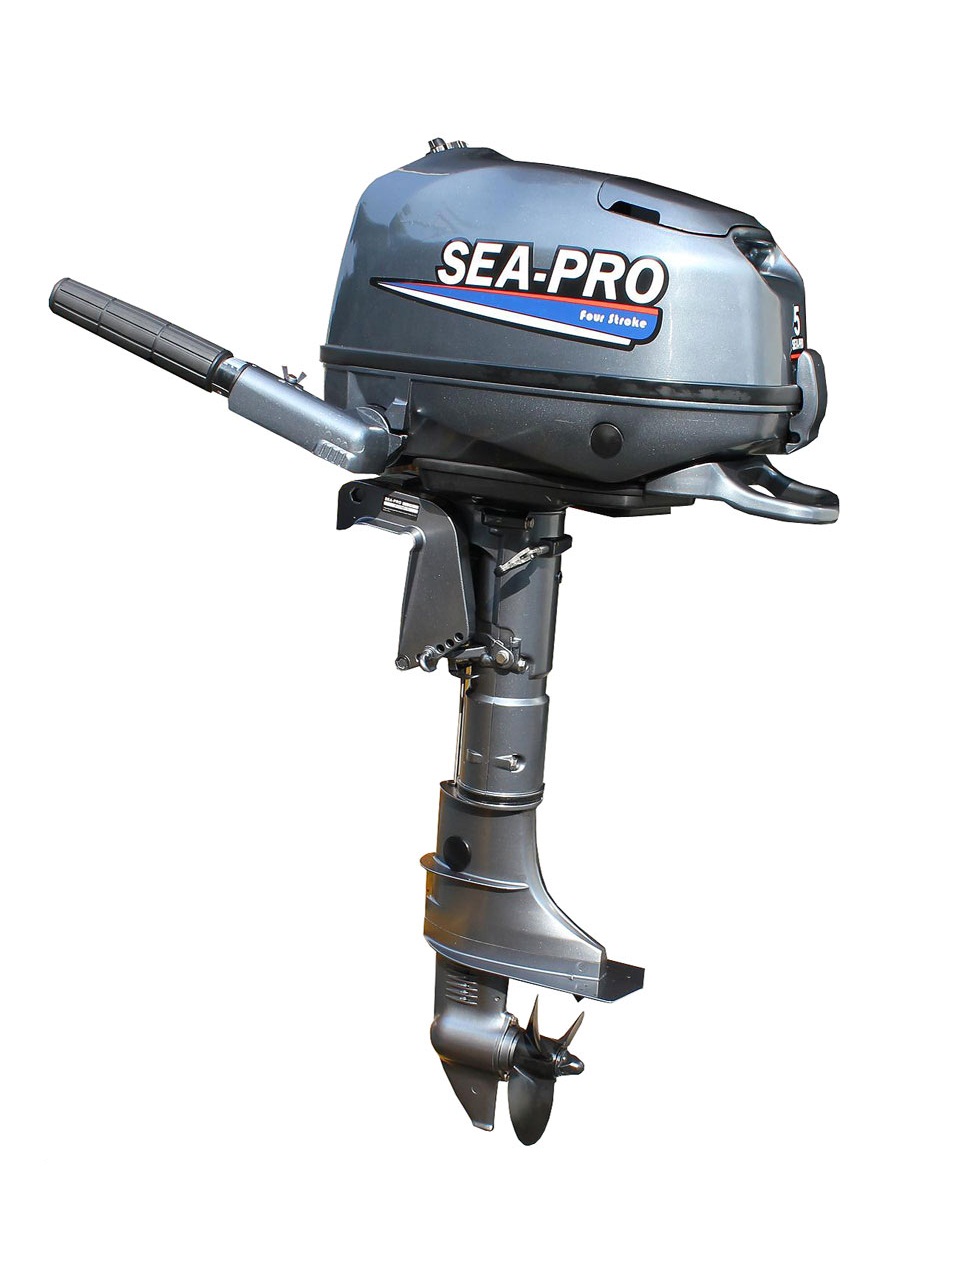 Лодочный мотор t 9.8. Лодочный мотор Sea-Pro f 4s. Sea-Pro мотор Лодочный t15 (s). Мотор Sea-Pro f 5s. Лодочный мотор Sea-Pro t5/s/Tarpon.